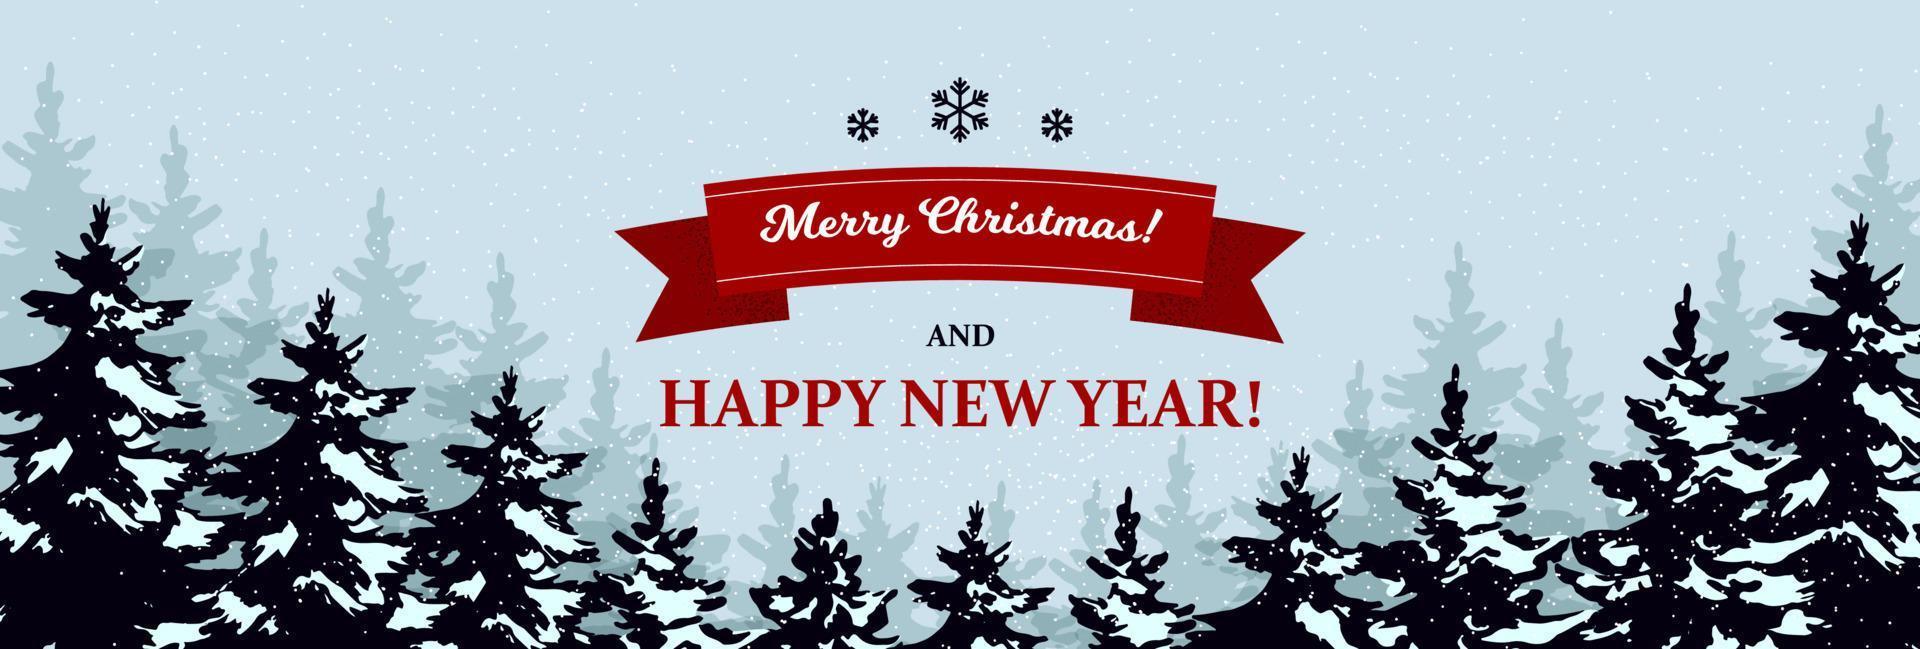 hermosa tarjeta de felicitación de Navidad horizontal en estilo retro con árboles de Navidad y letras. lugar para el texto. ilustración vectorial con elementos dibujados a mano. vector